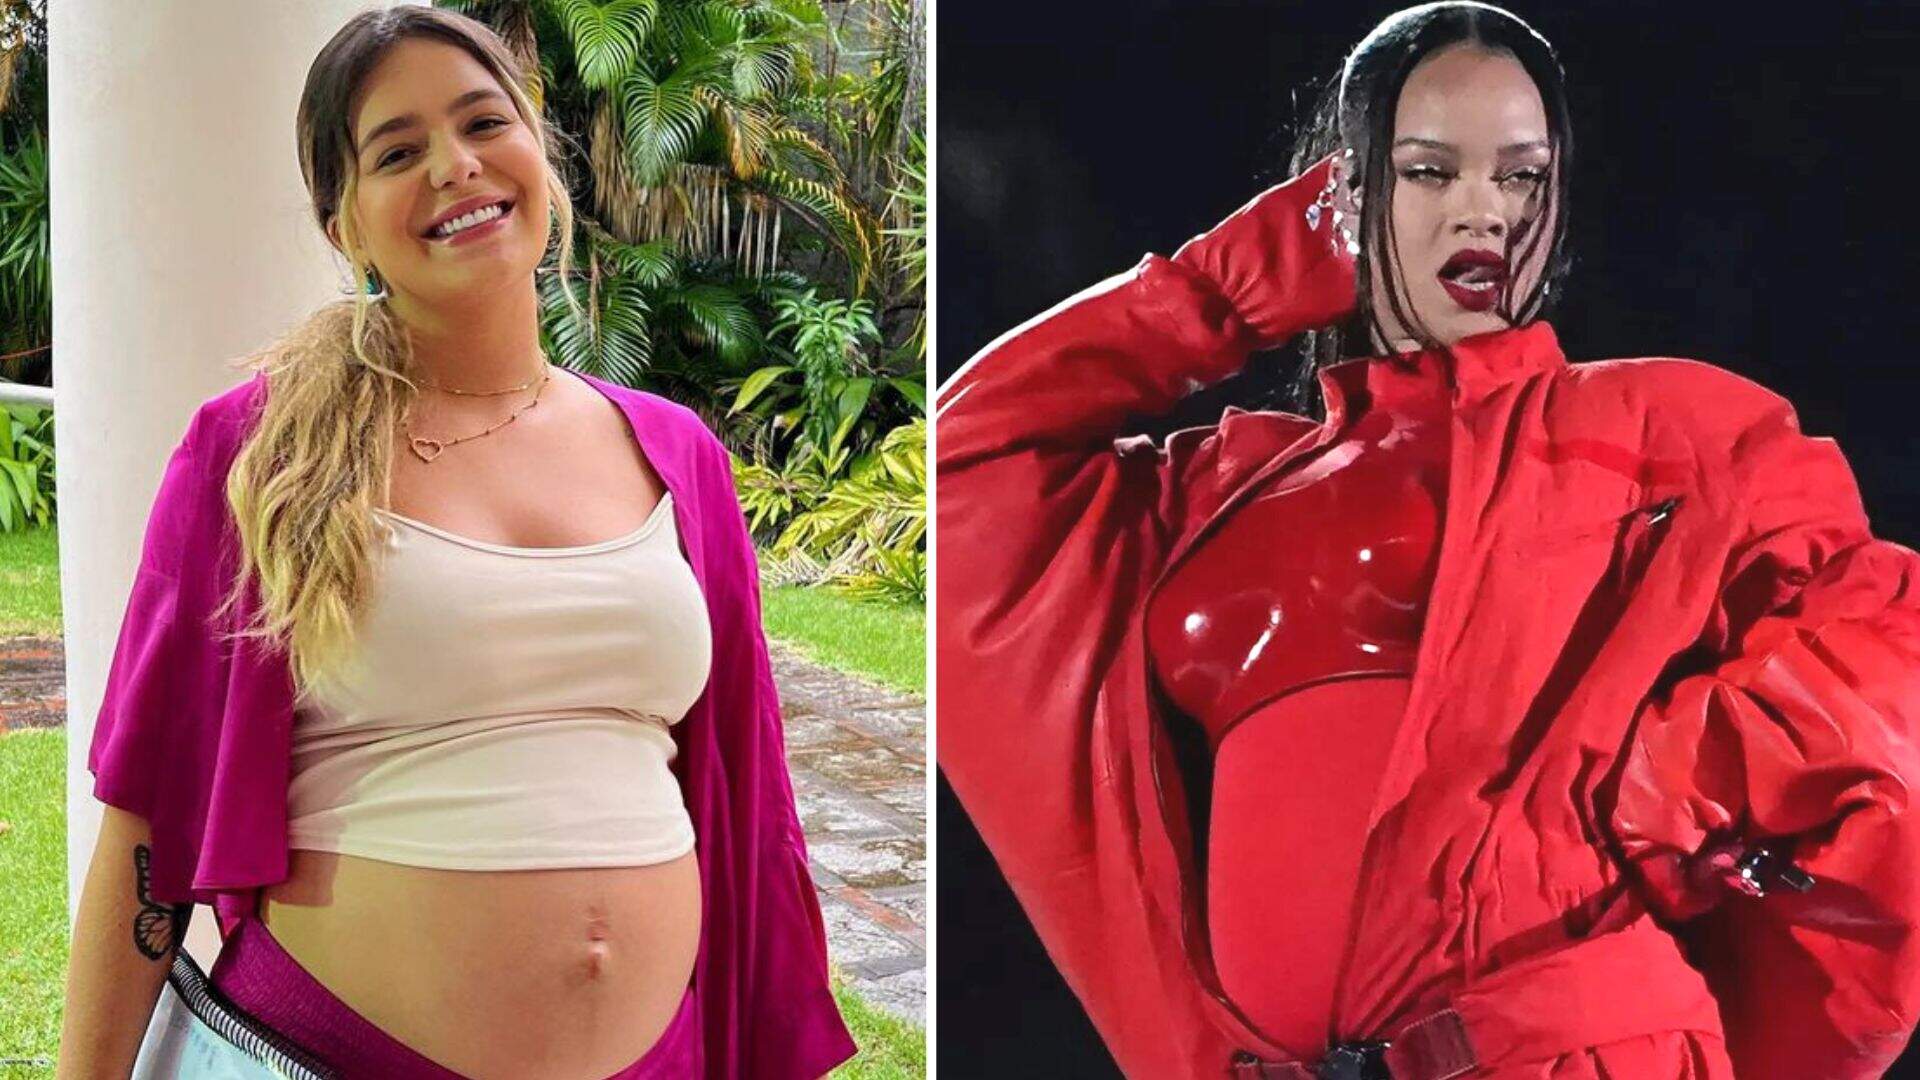 Viih Tube se surpreende com apresentação de Rihanna: “Fazendo um show pendurada grávida” - Metropolitana FM